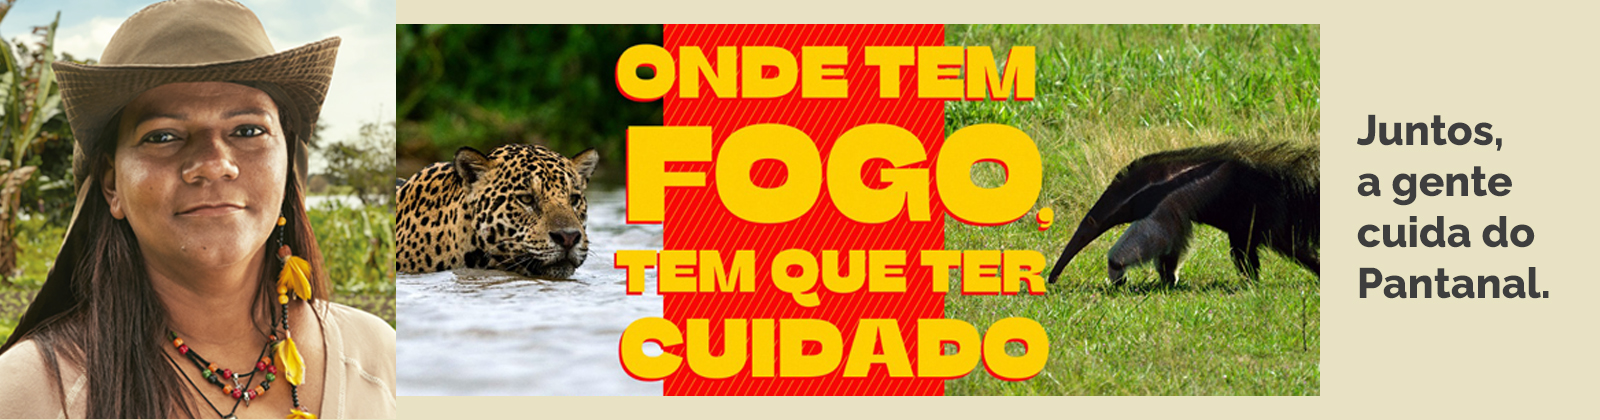 Banner com uma foto de uma quilombola, uma foto de onça pintada, escrito onde tem fogo tem que ter cuidado, uma foto de tamanduá  e o texto: Juntos, a gente cuida do Pantanal.